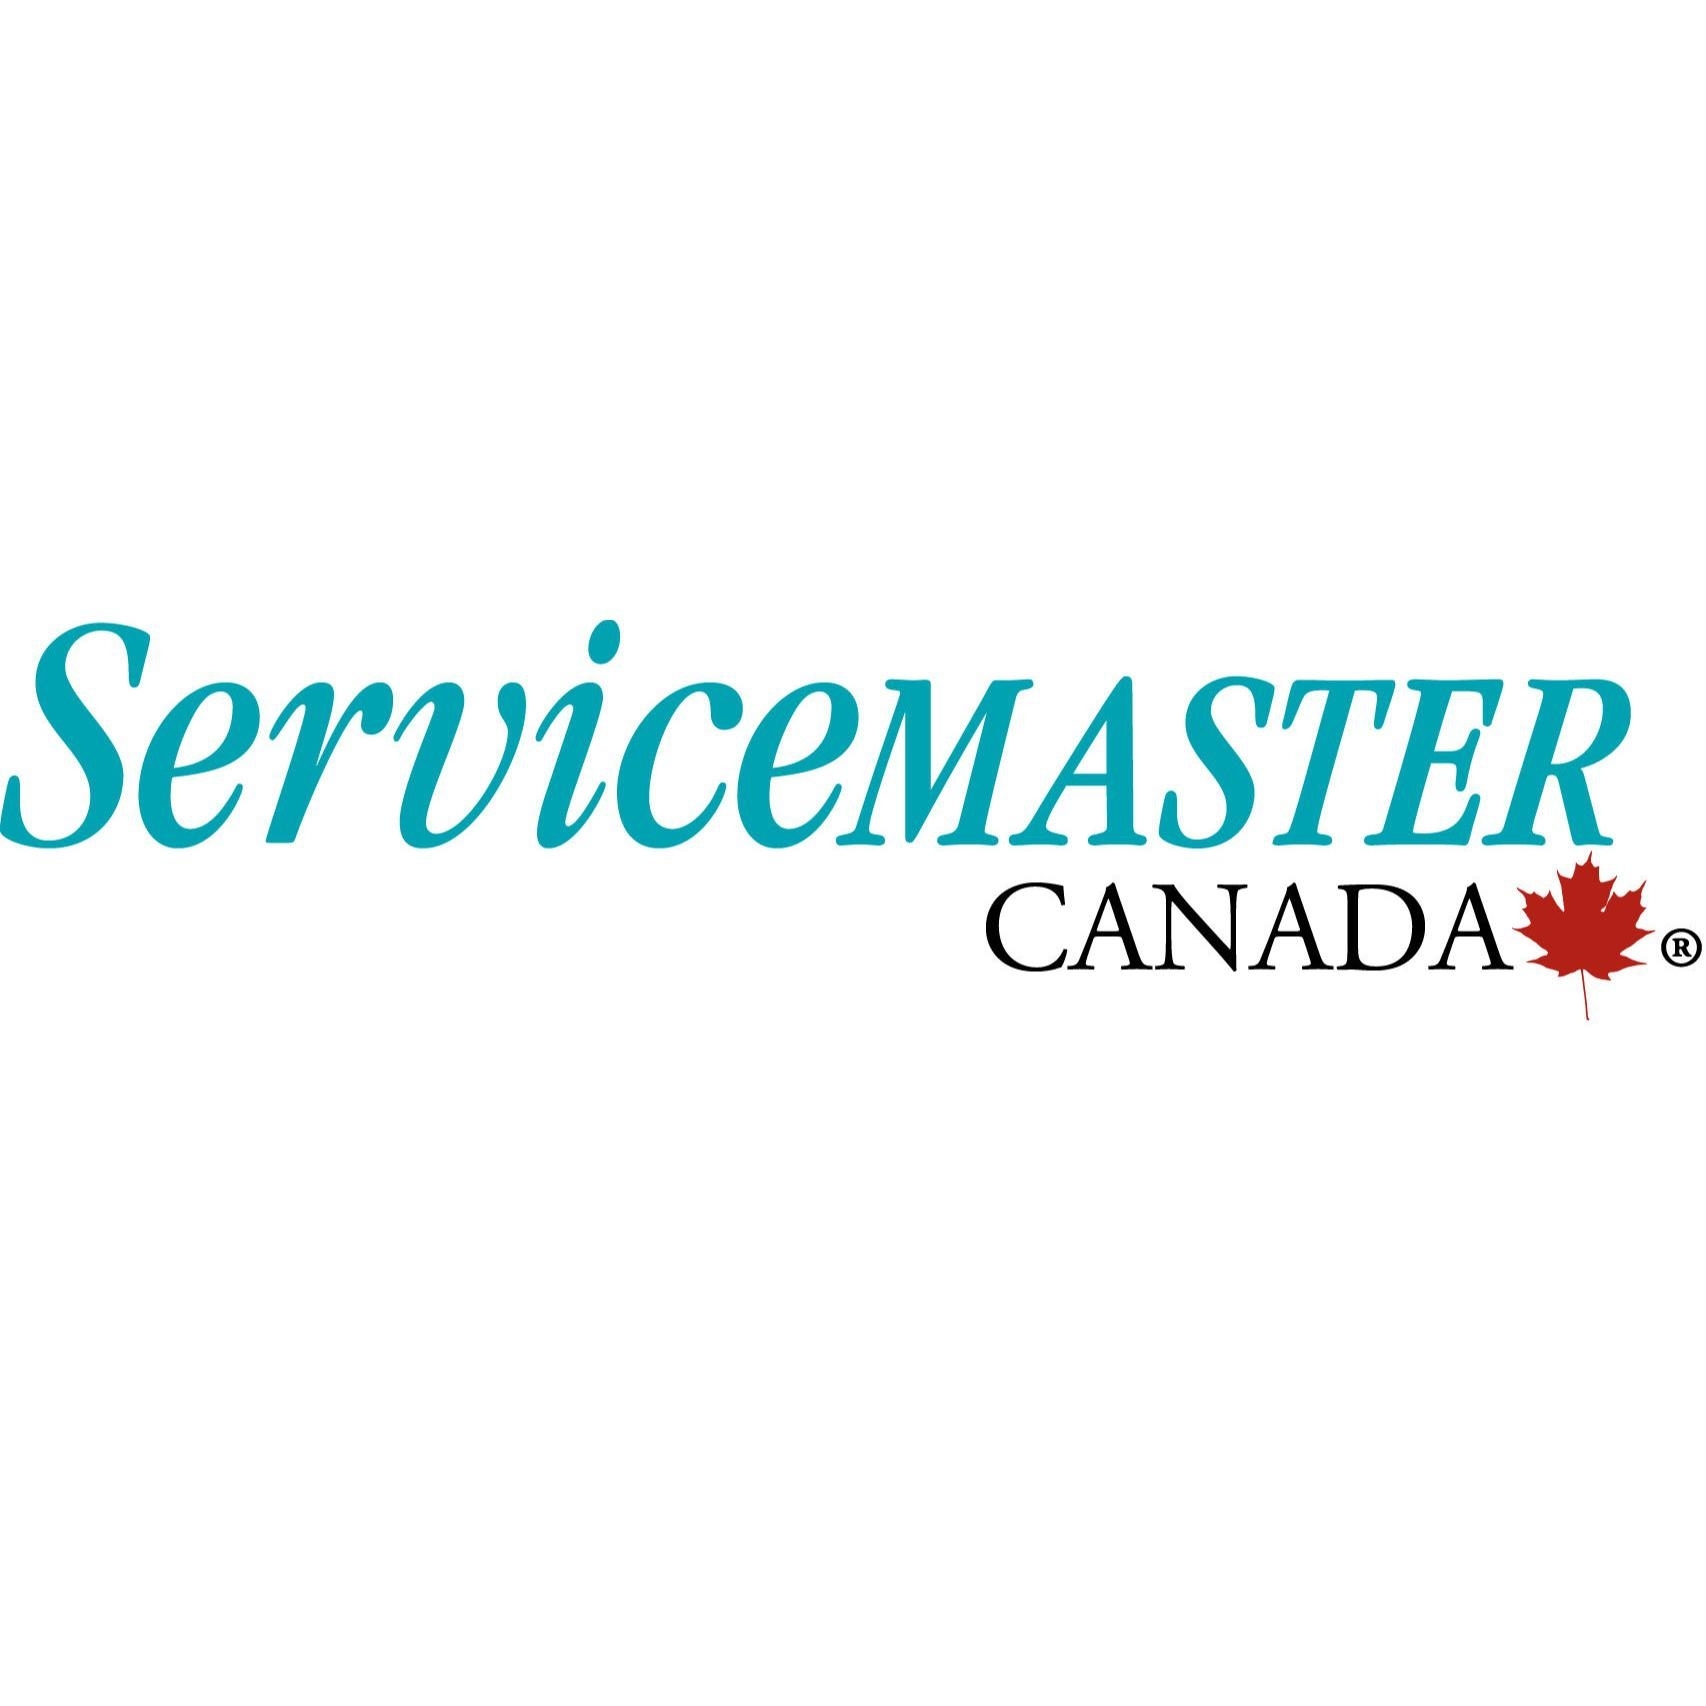 ServiceMaster Canada - Immeuble à bureaux